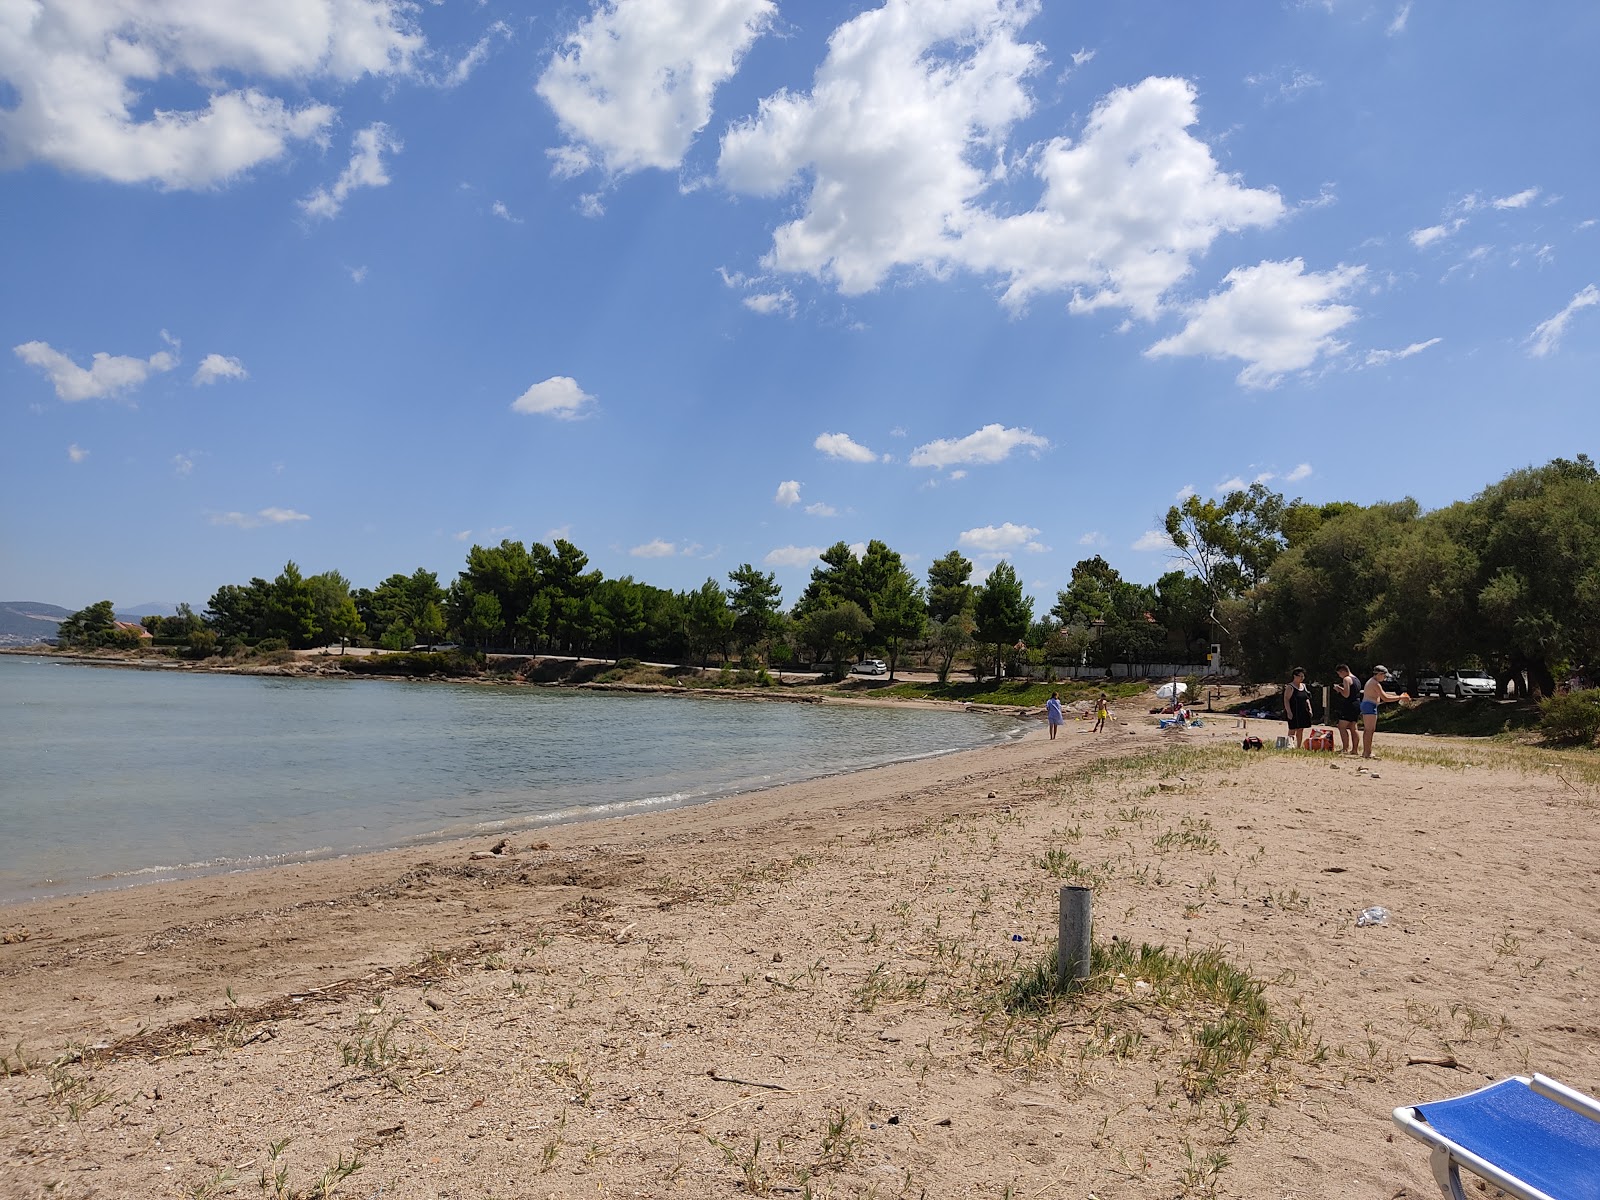 Foto av Vournontas beach med brunsand yta